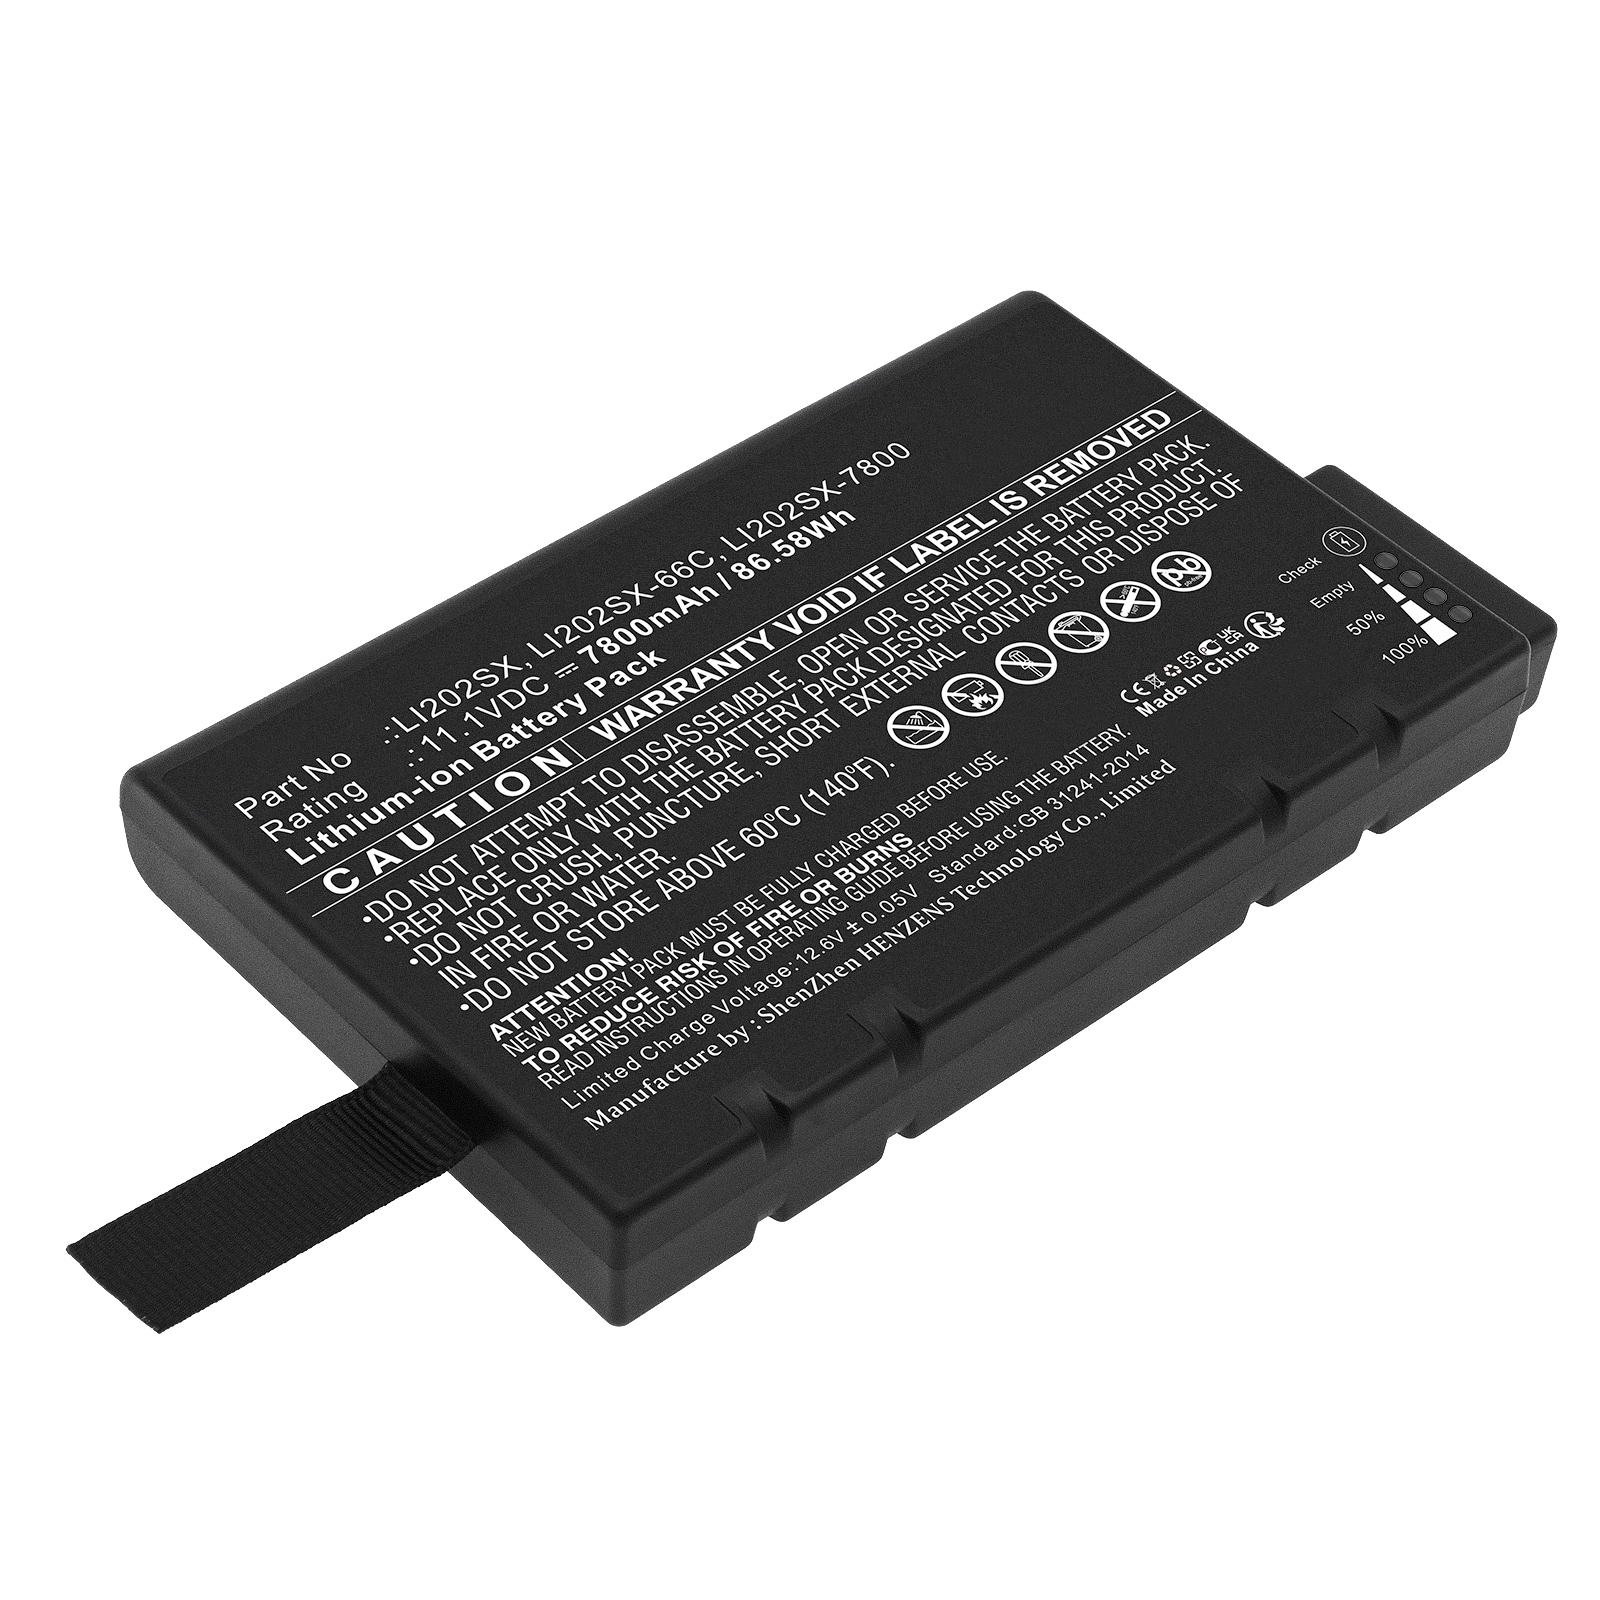 Batteries for TSIEquipment